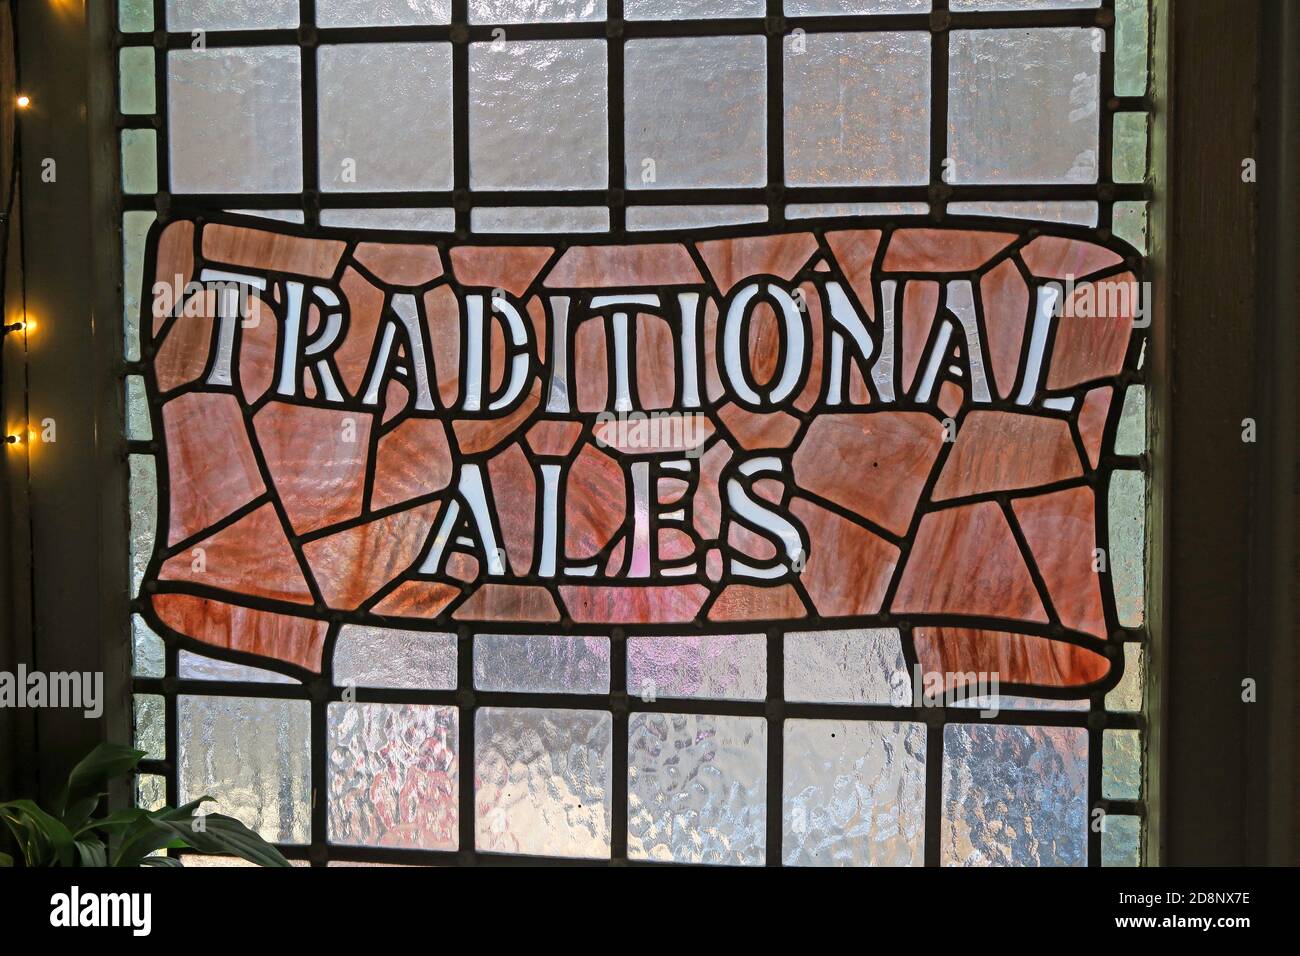 Traditionnel Ales, vitrail, dans un bar/pub, Nottingham, centre-ville, Nottinghamshire, Angleterre, Royaume-Uni Banque D'Images